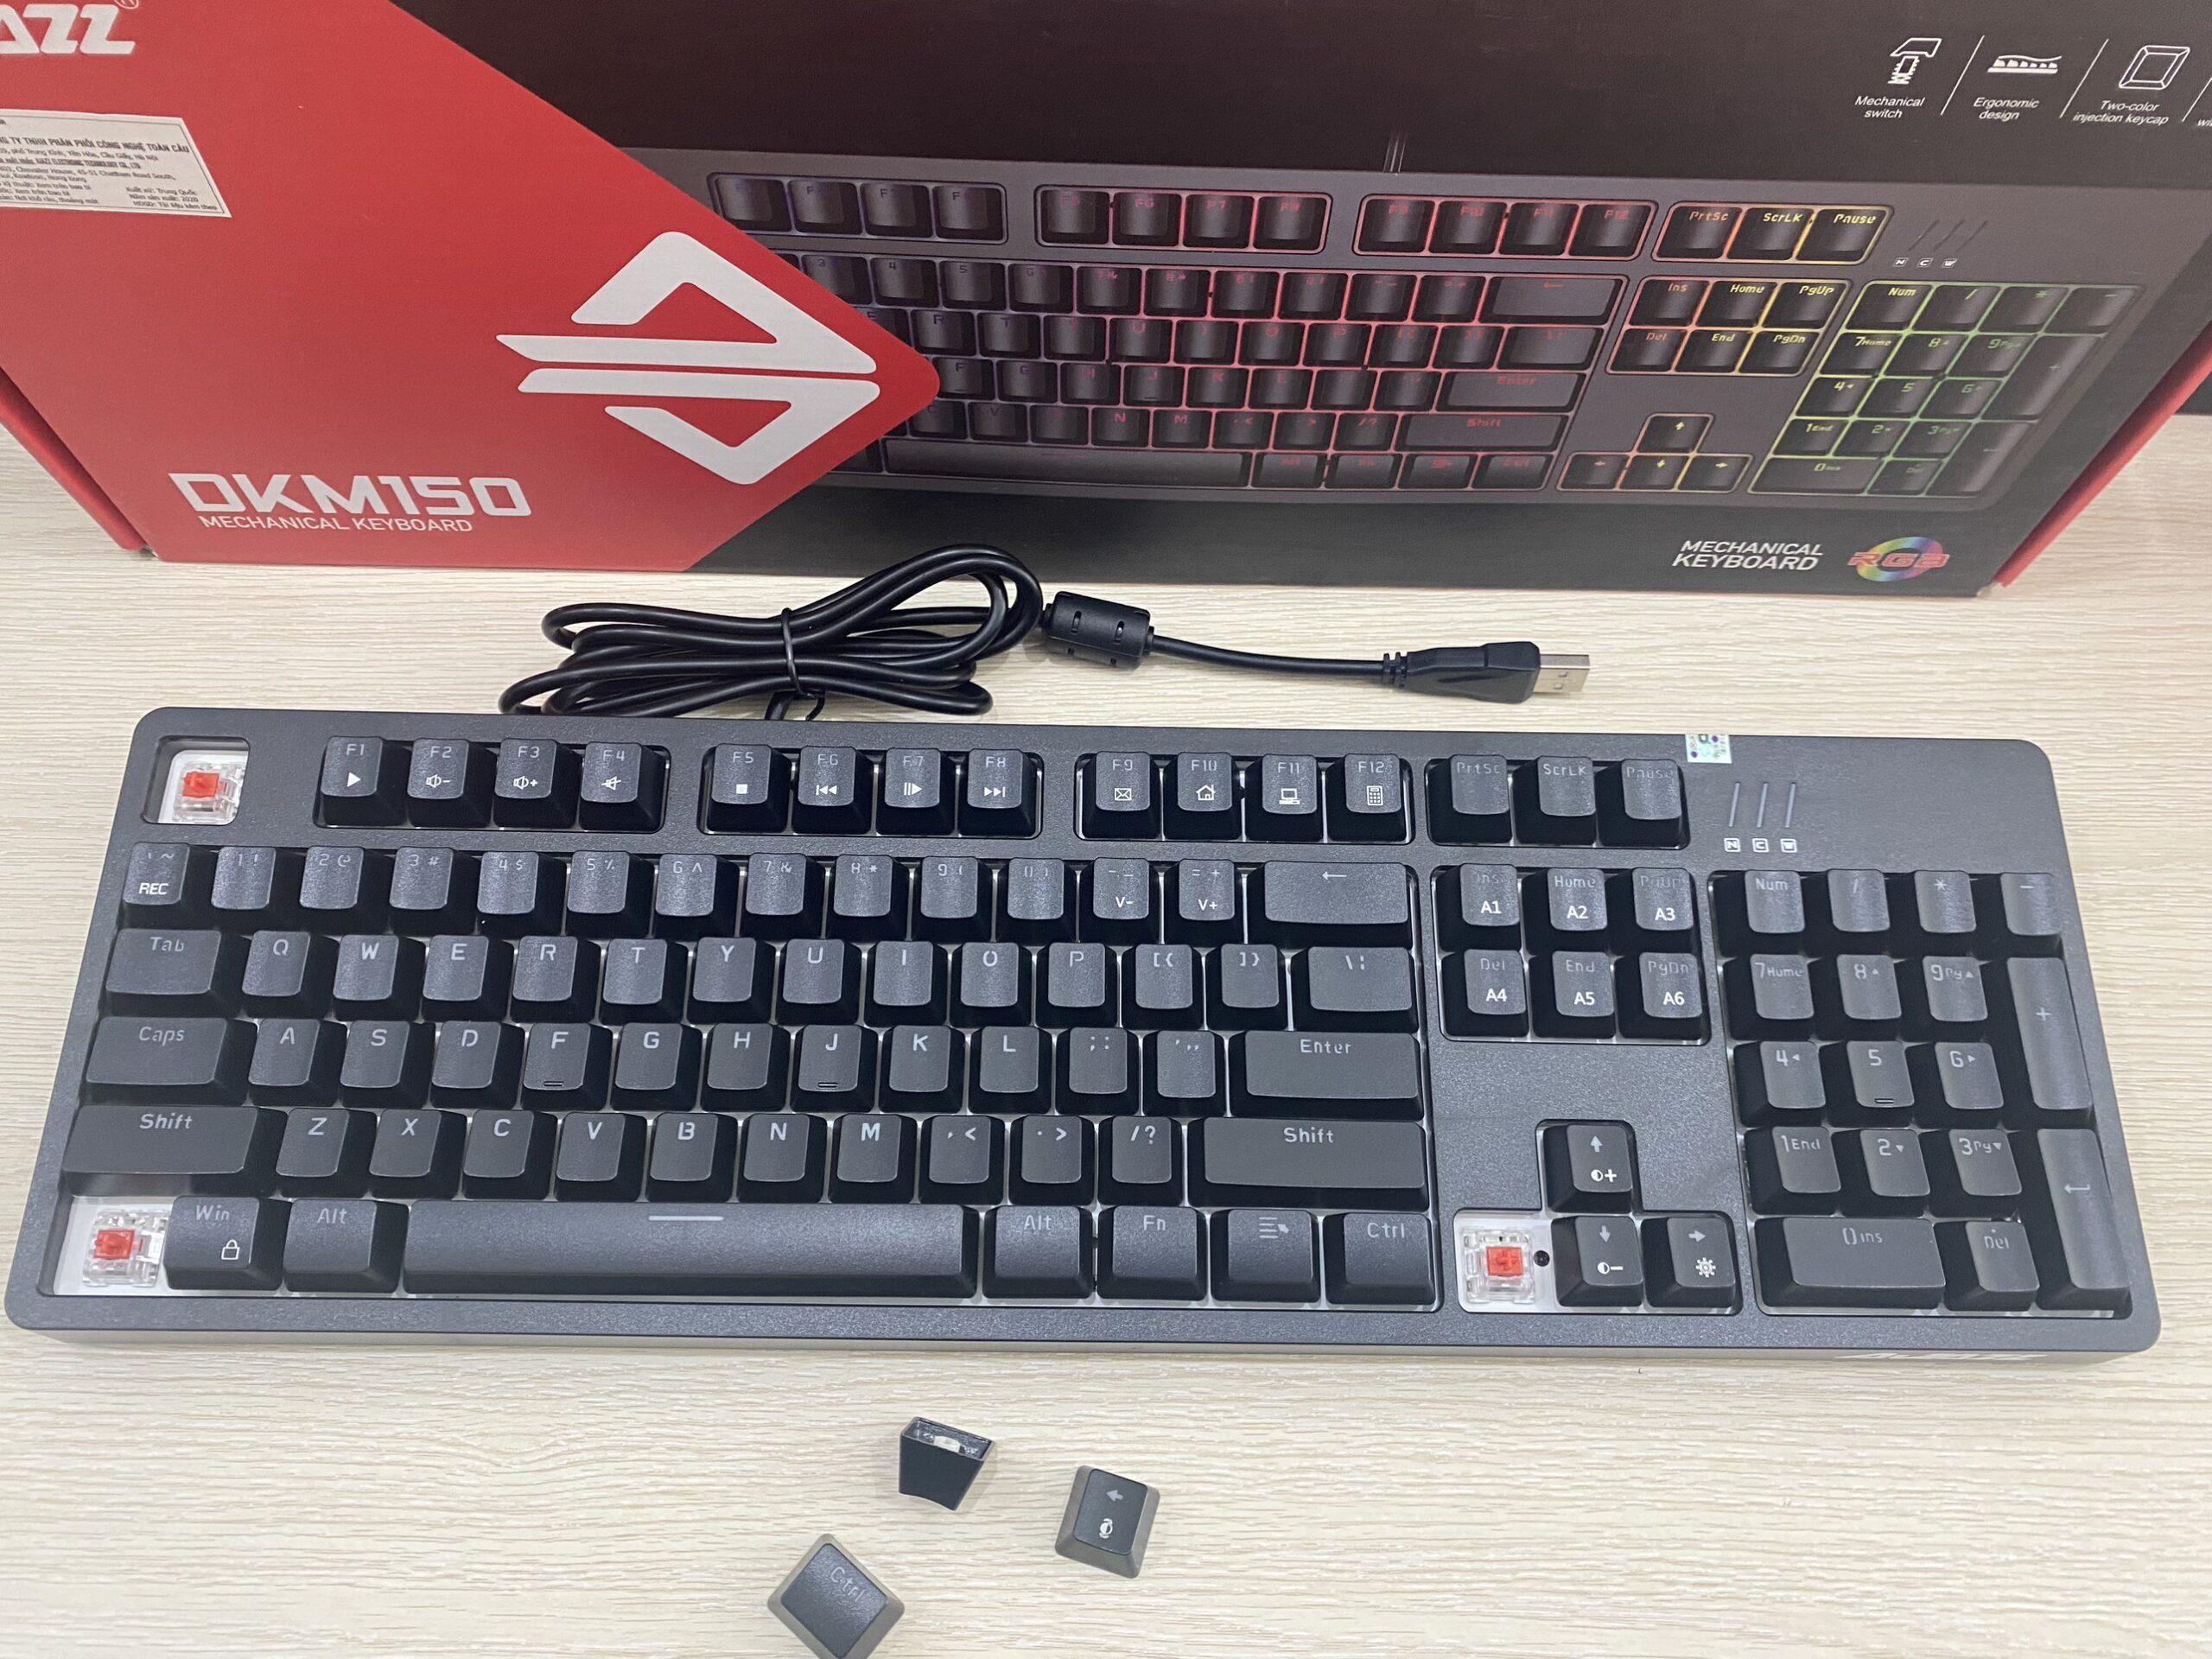 Bàn phím - Keyboard Ajazz DKM150